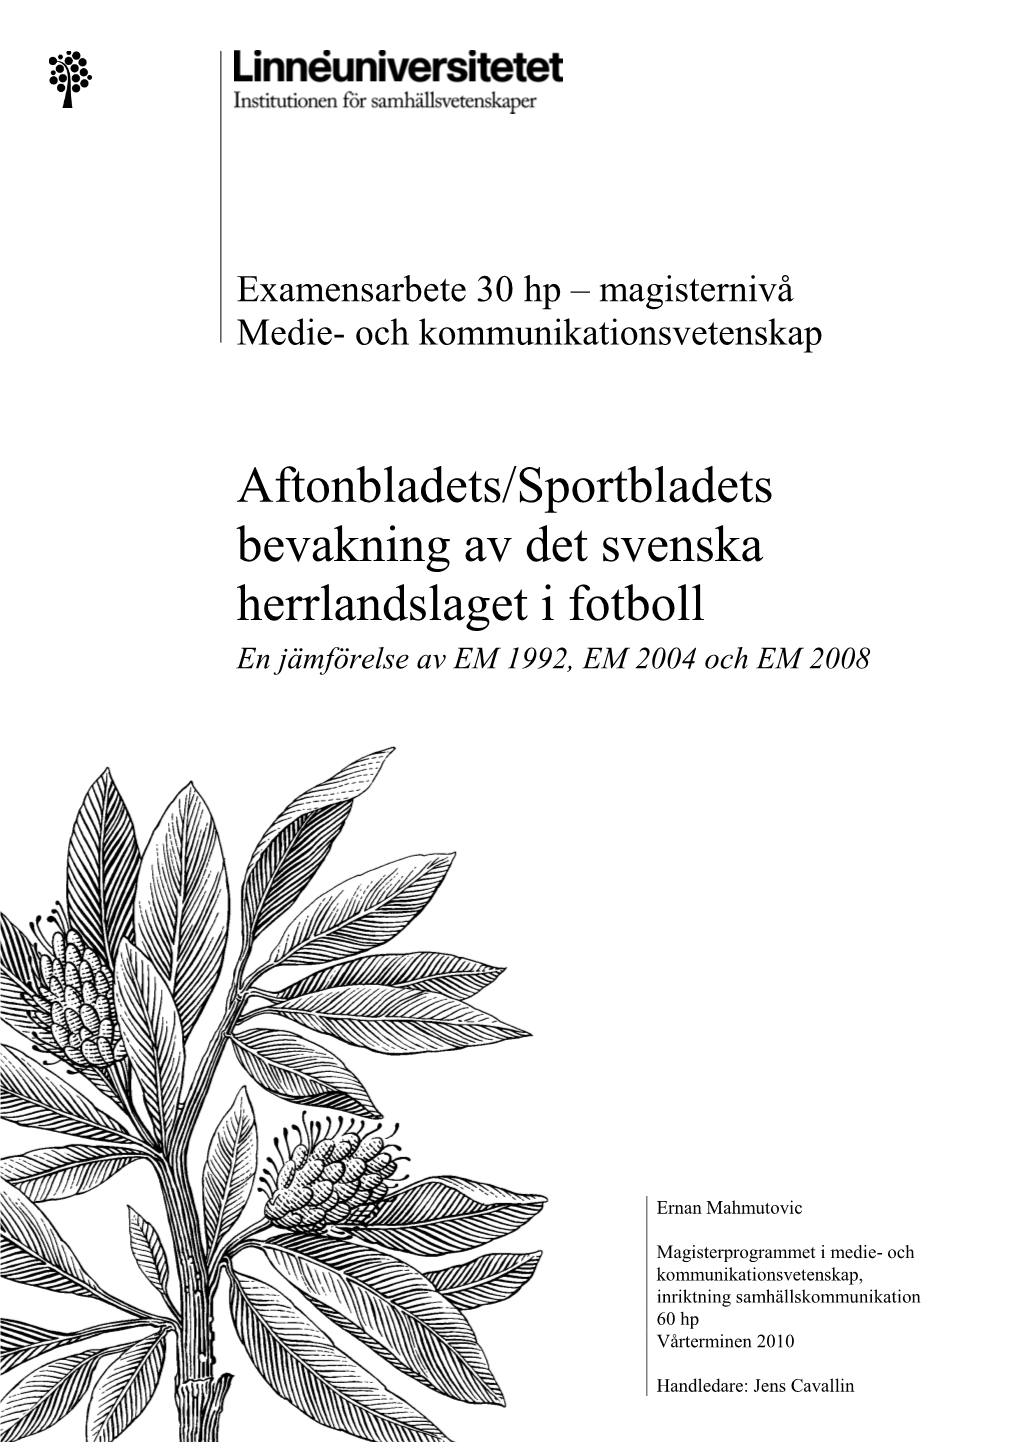 Aftonbladets/Sportbladets Bevakning Av Det Svenska Herrlandslaget I Fotboll En Jämförelse Av EM 1992, EM 2004 Och EM 2008